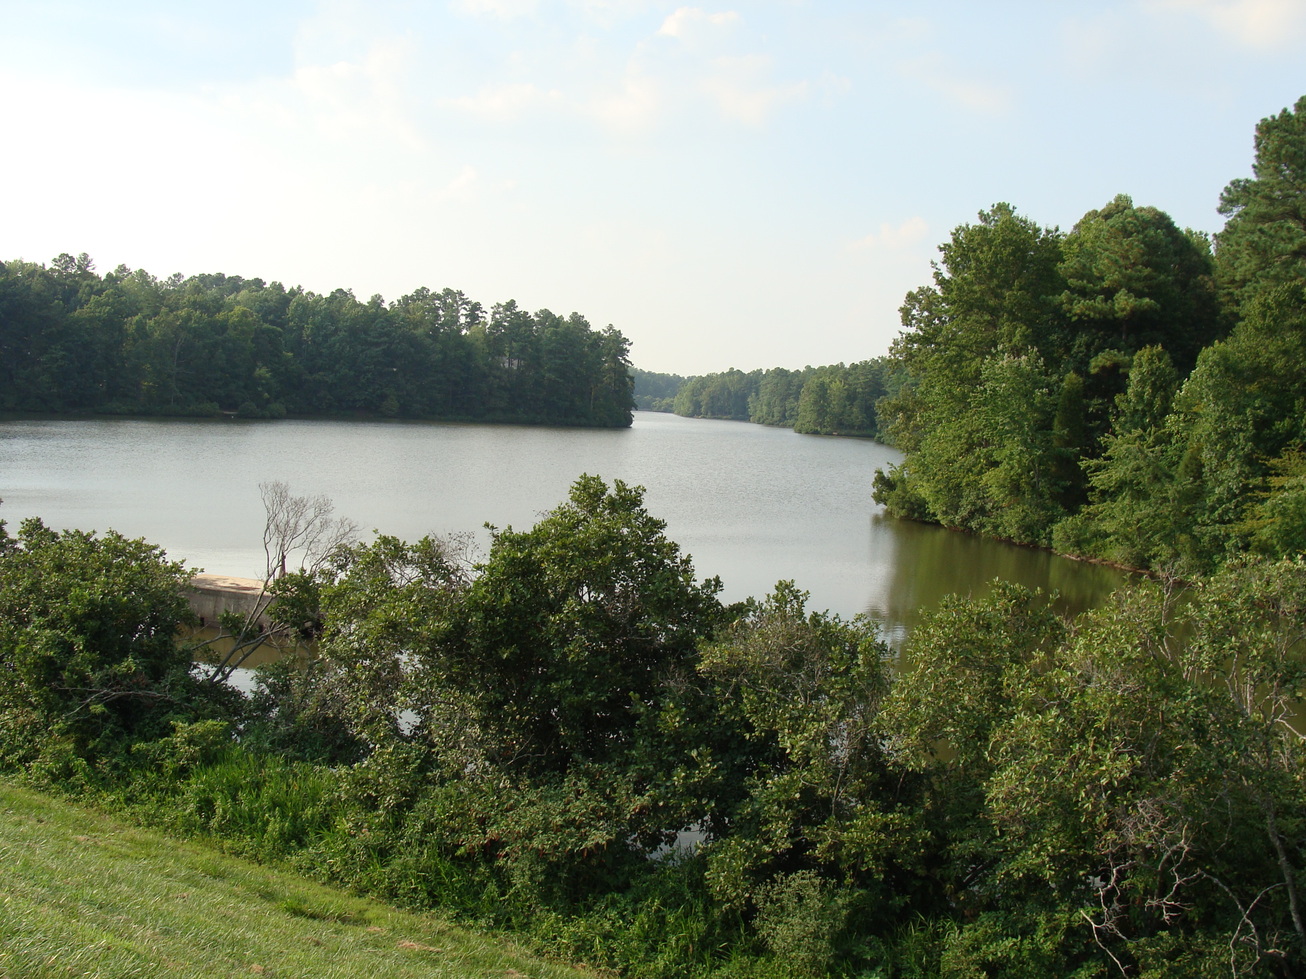 Alliance, NC: The breathtaking beauty of Shelley Lake